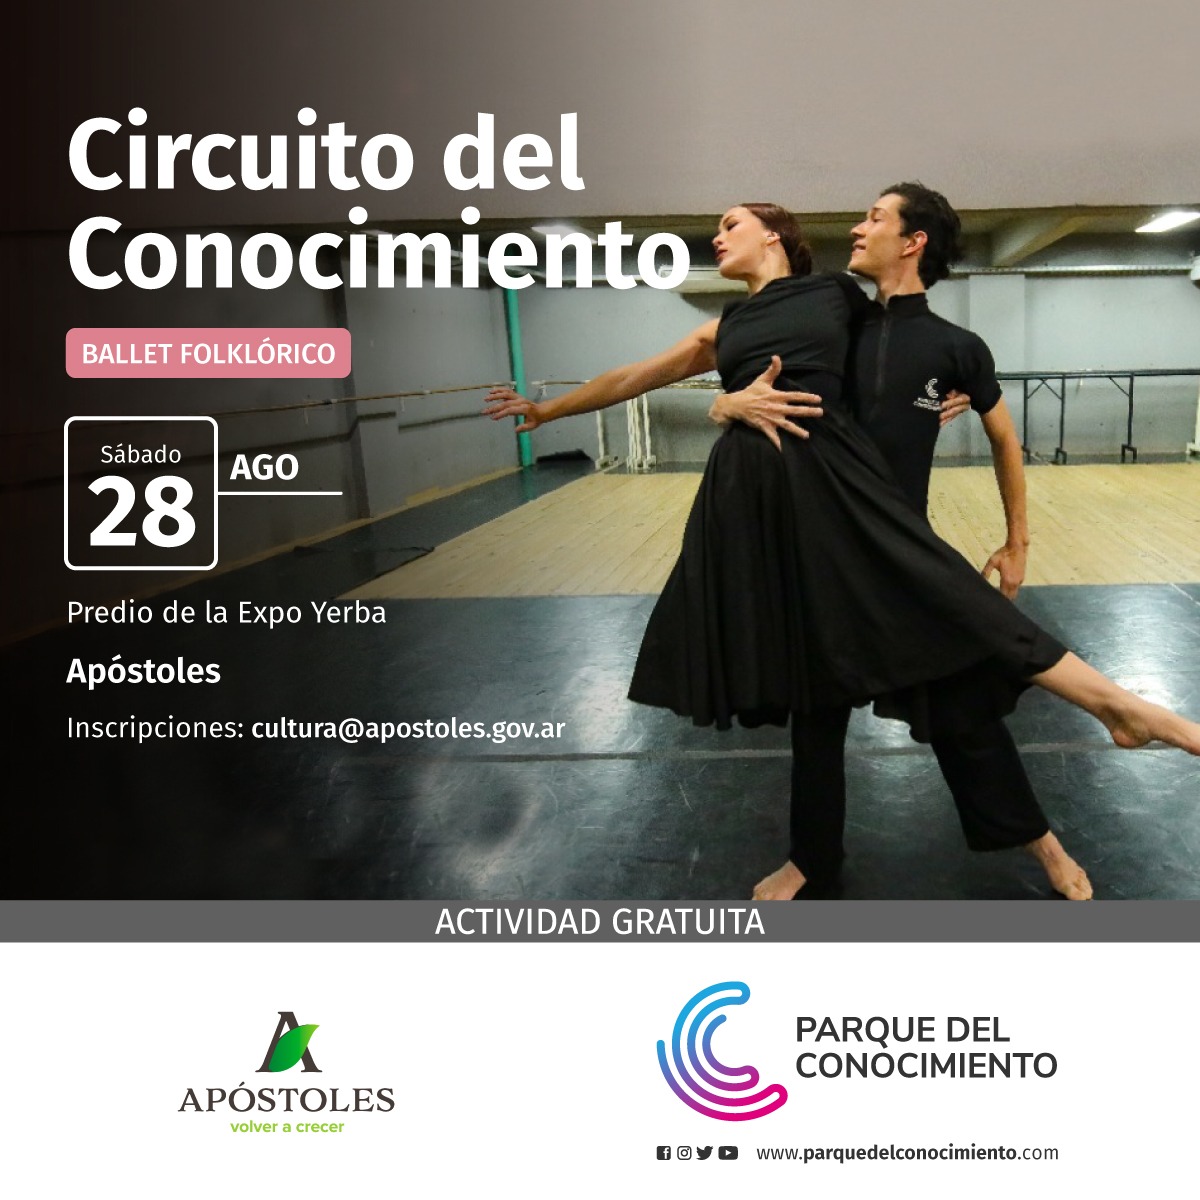 El día sábado 28 de agosto llega el circuito del conocimiento con capacitaciones del Ballet Folklórico